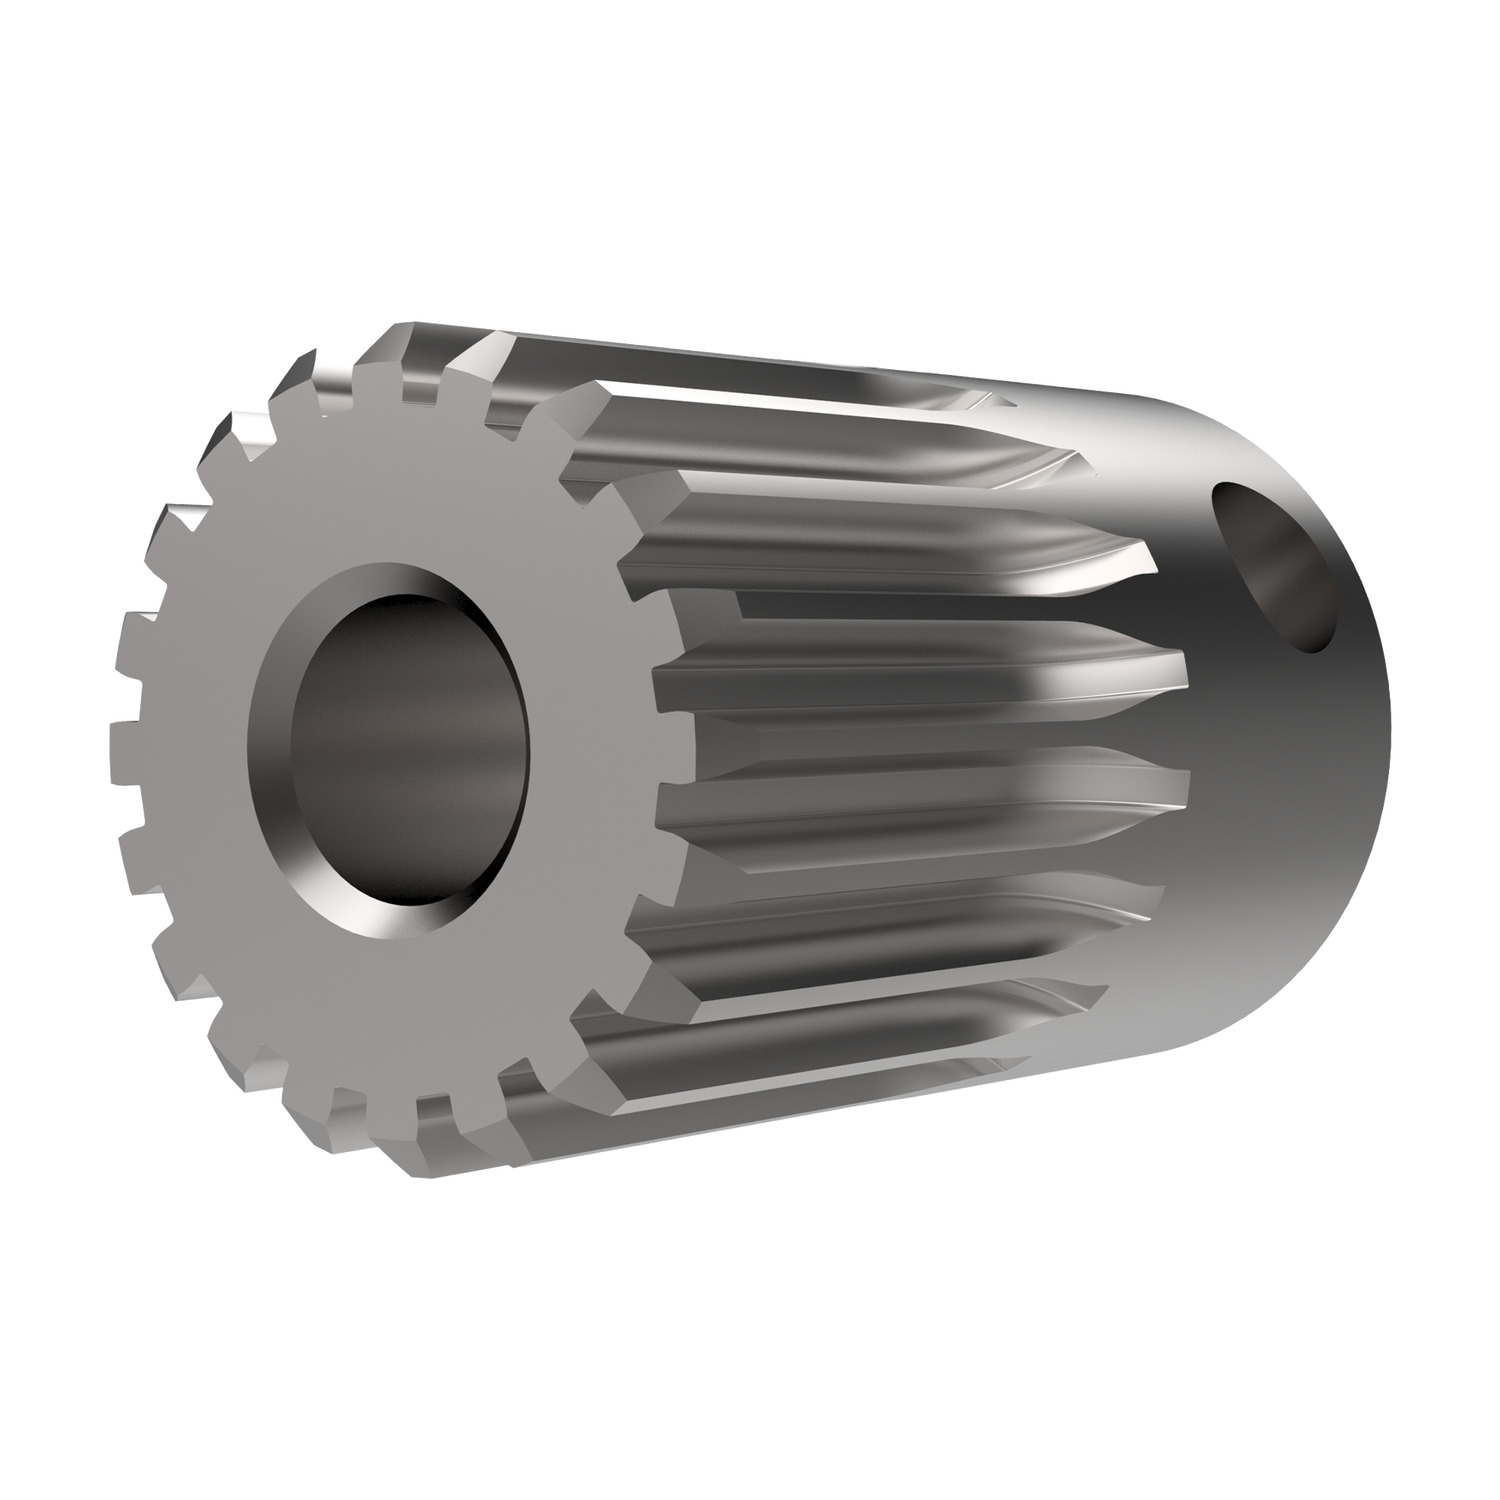 Product R5123, Spur Gears - Module 0.5 - Steel carbon steel - 15-24 teeth / 